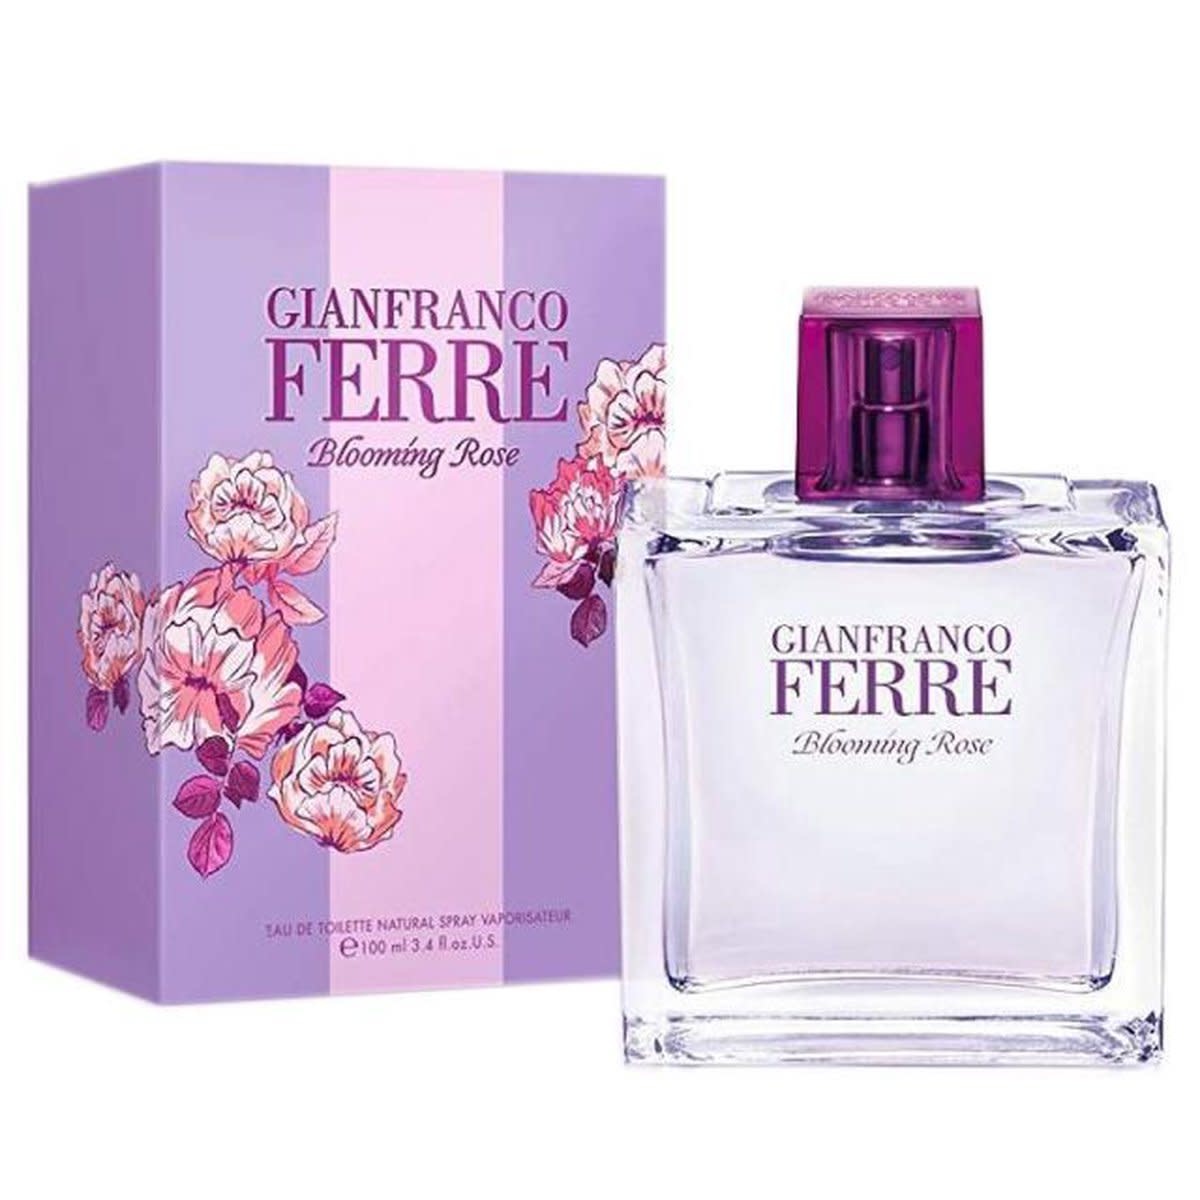 Gianfranco Ferre Perfume for Women by Gianfranco Ferre in Canada –